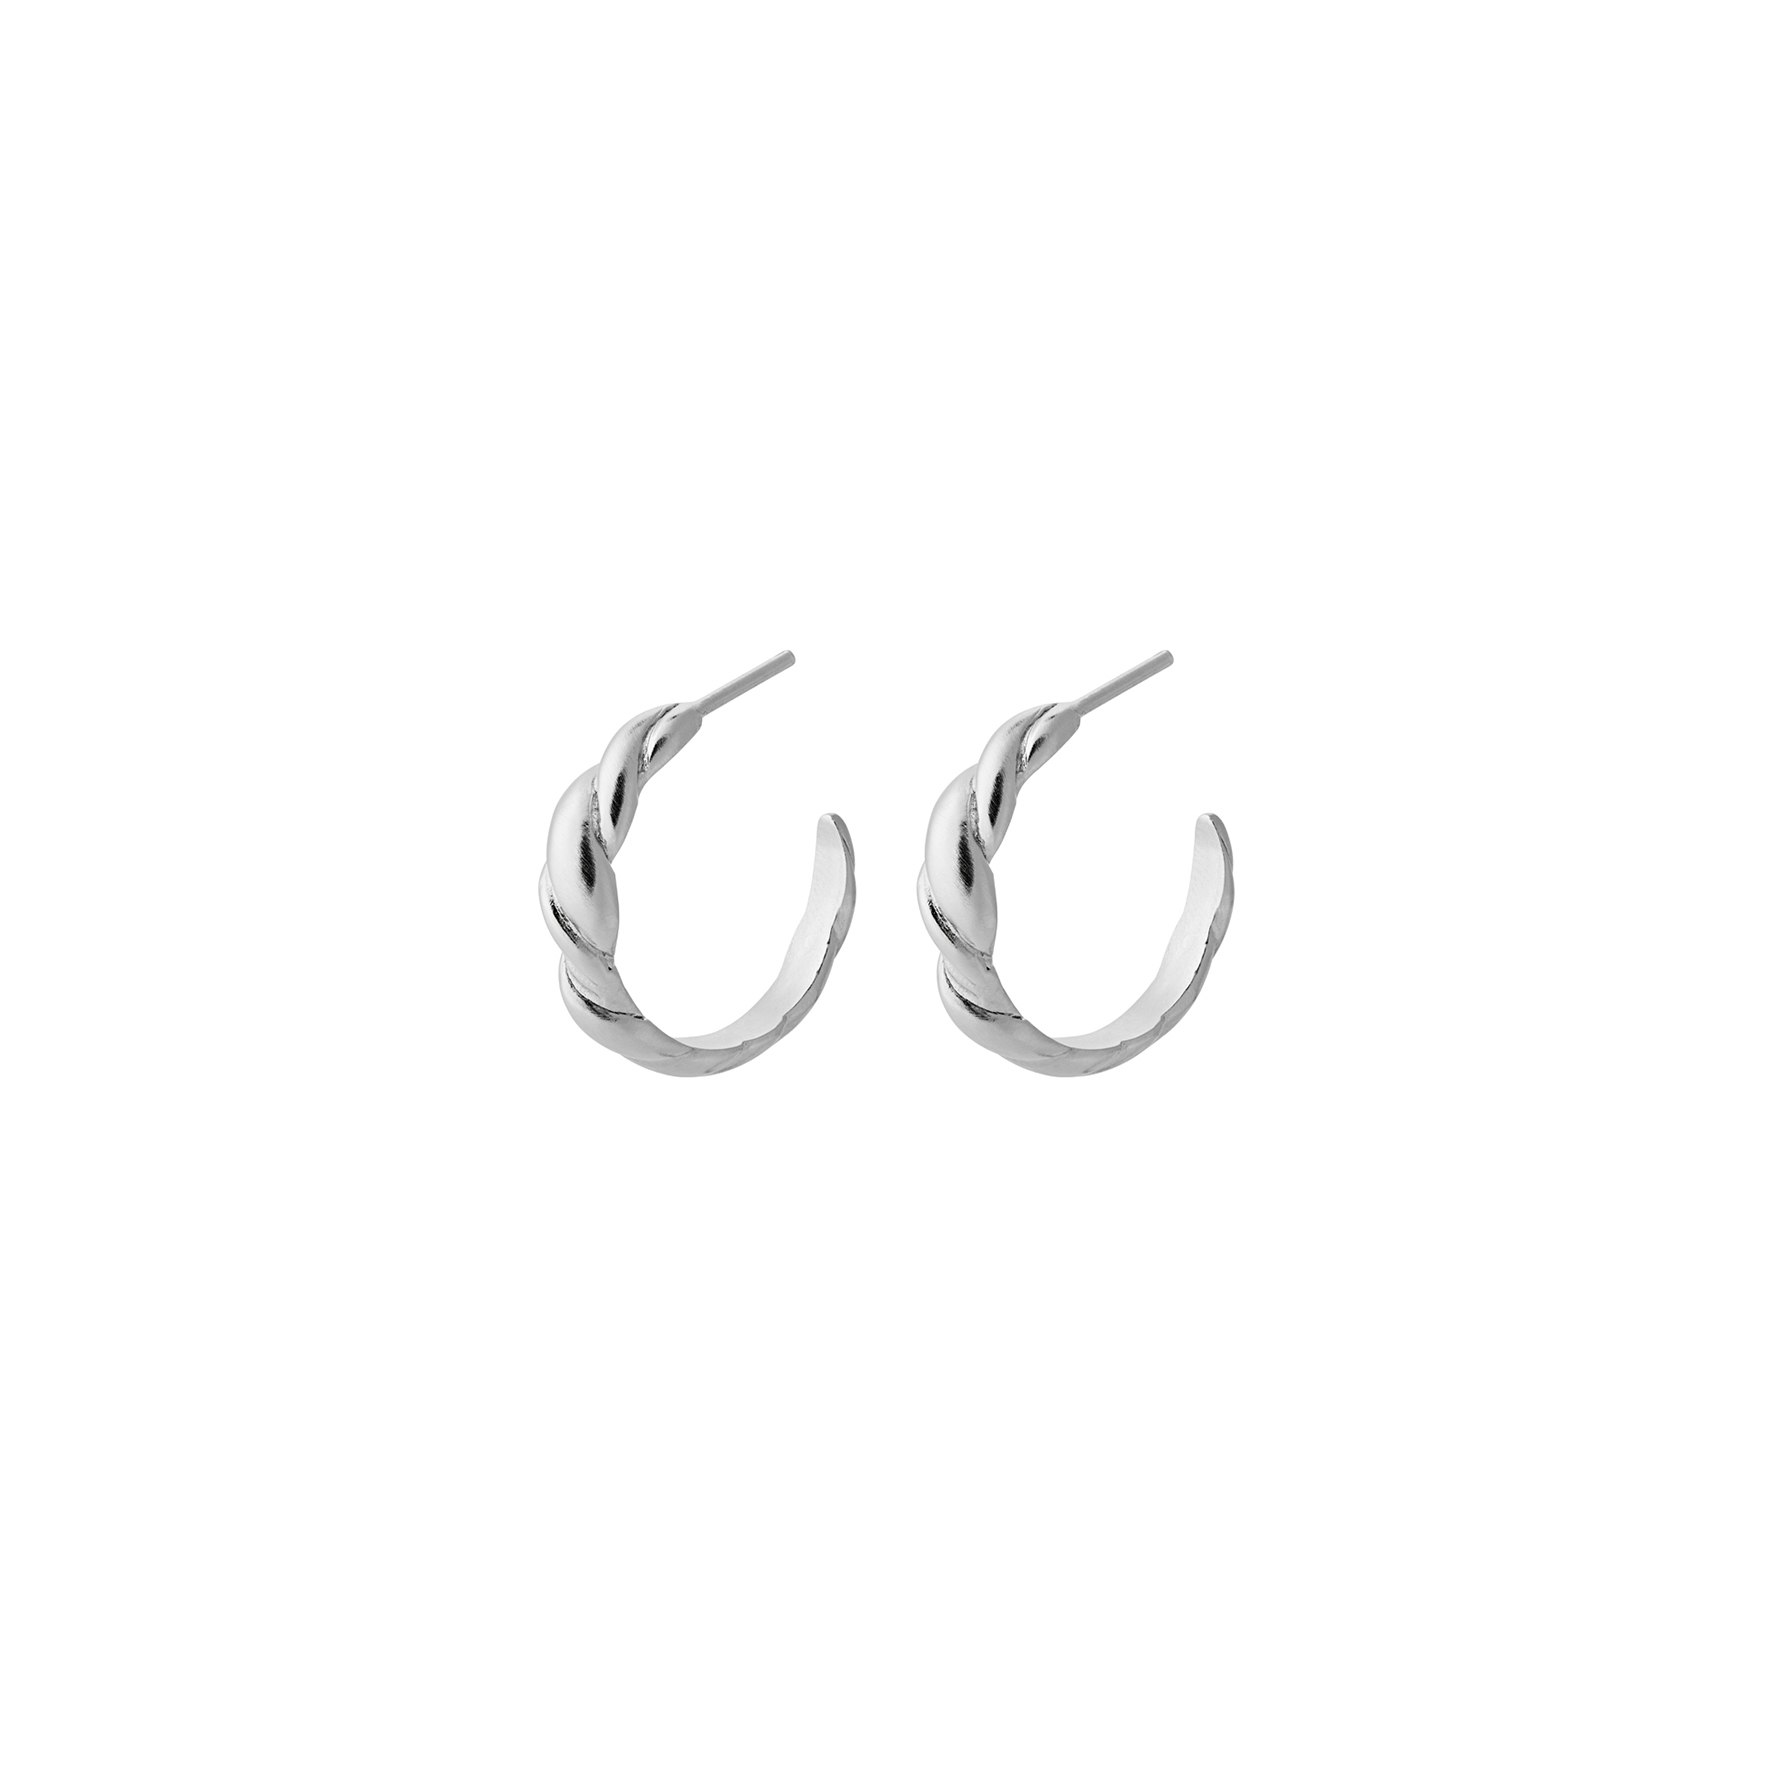 Hana Earrings from Pernille Corydon in Silver Sterling 925